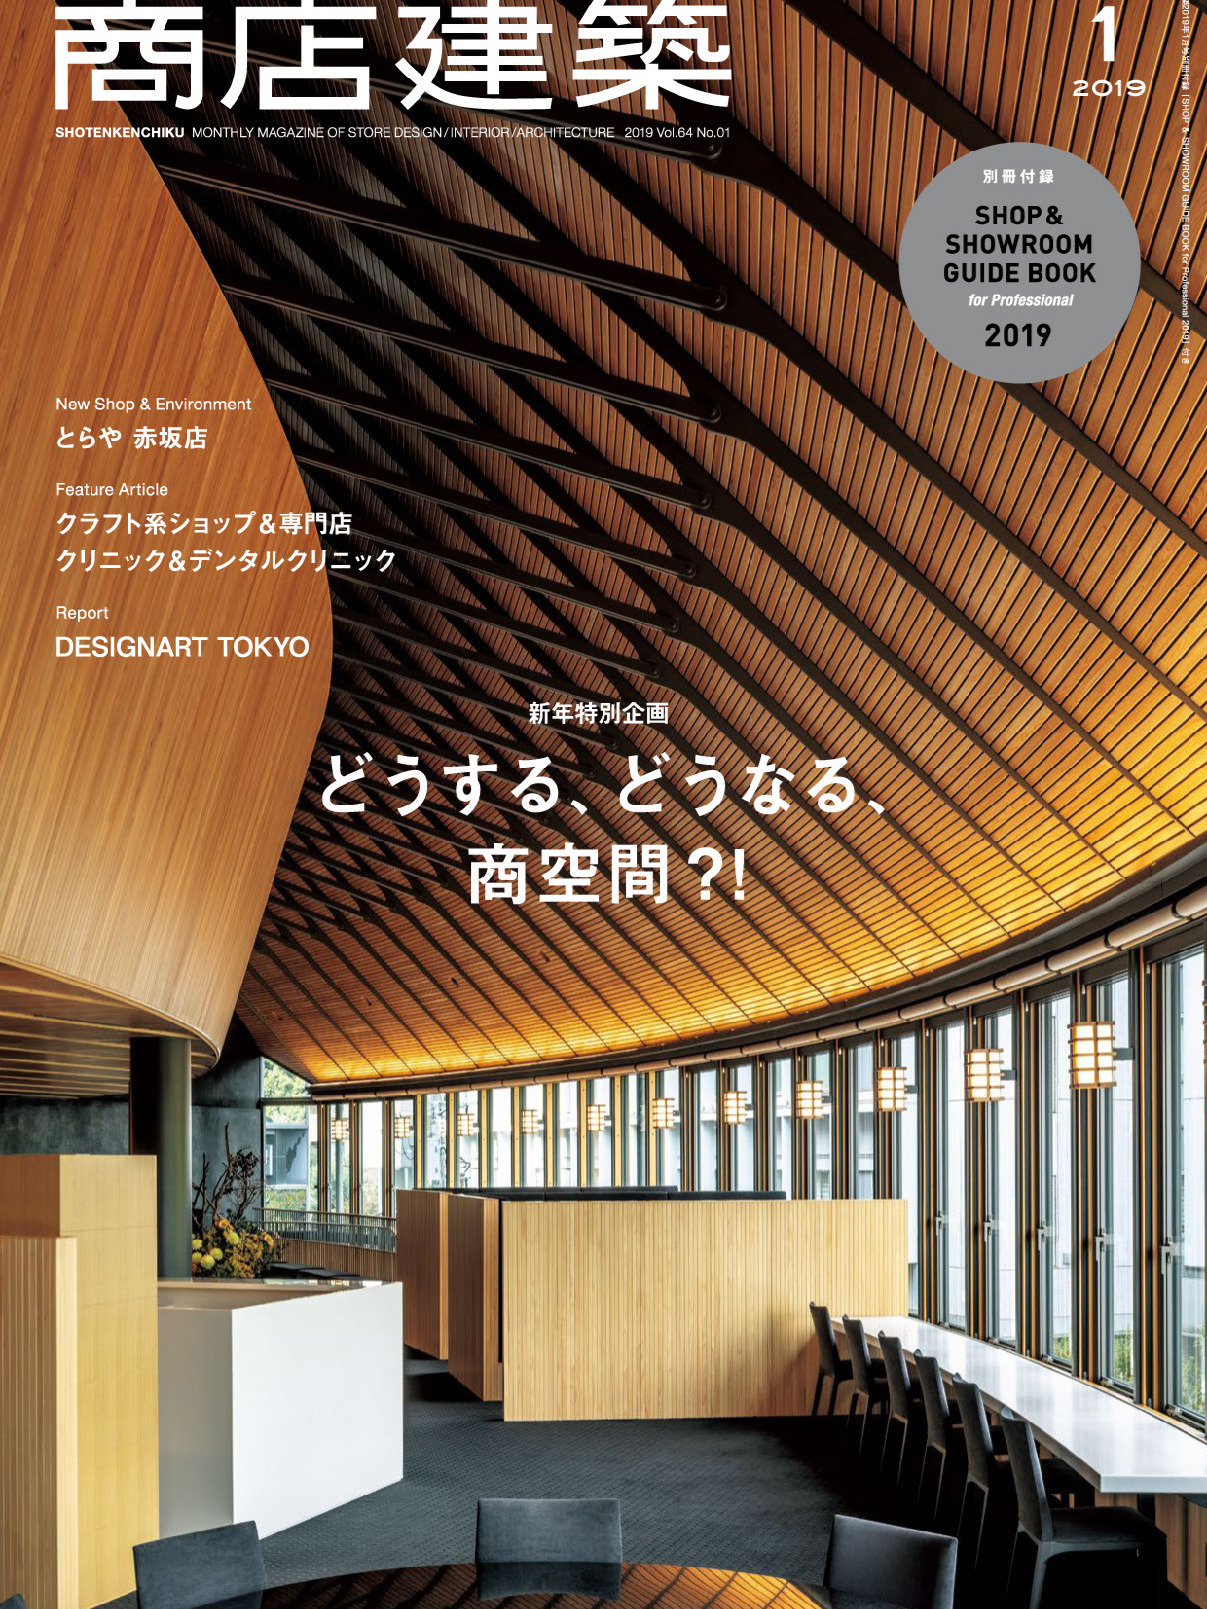 《商店建筑Shotenkenchiku》日本版店面室内设计杂志2019年01月号